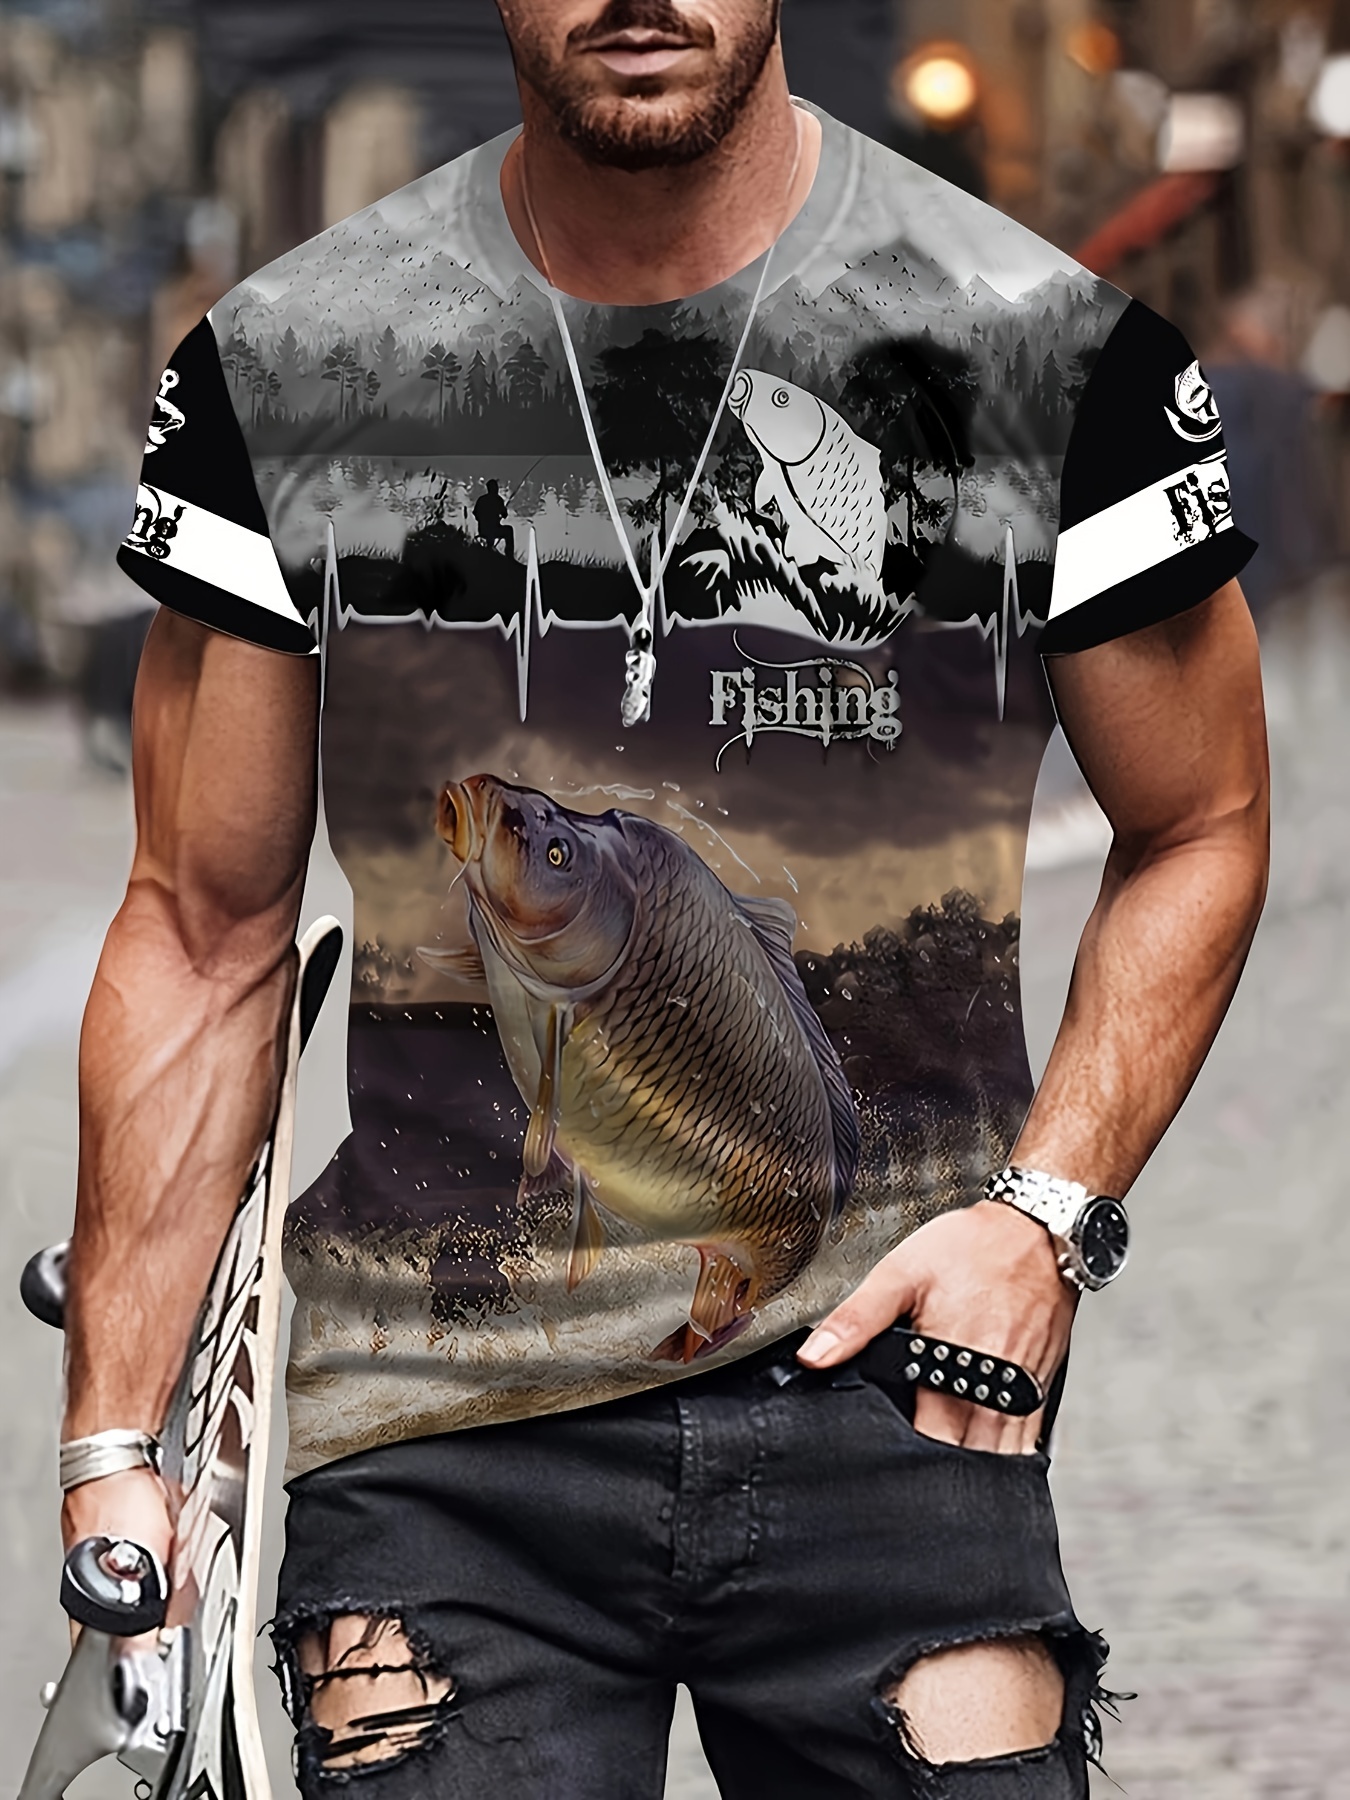 Fishing Gifts for Men, Good Things, Fishing T-Shirt, Fishing Gear